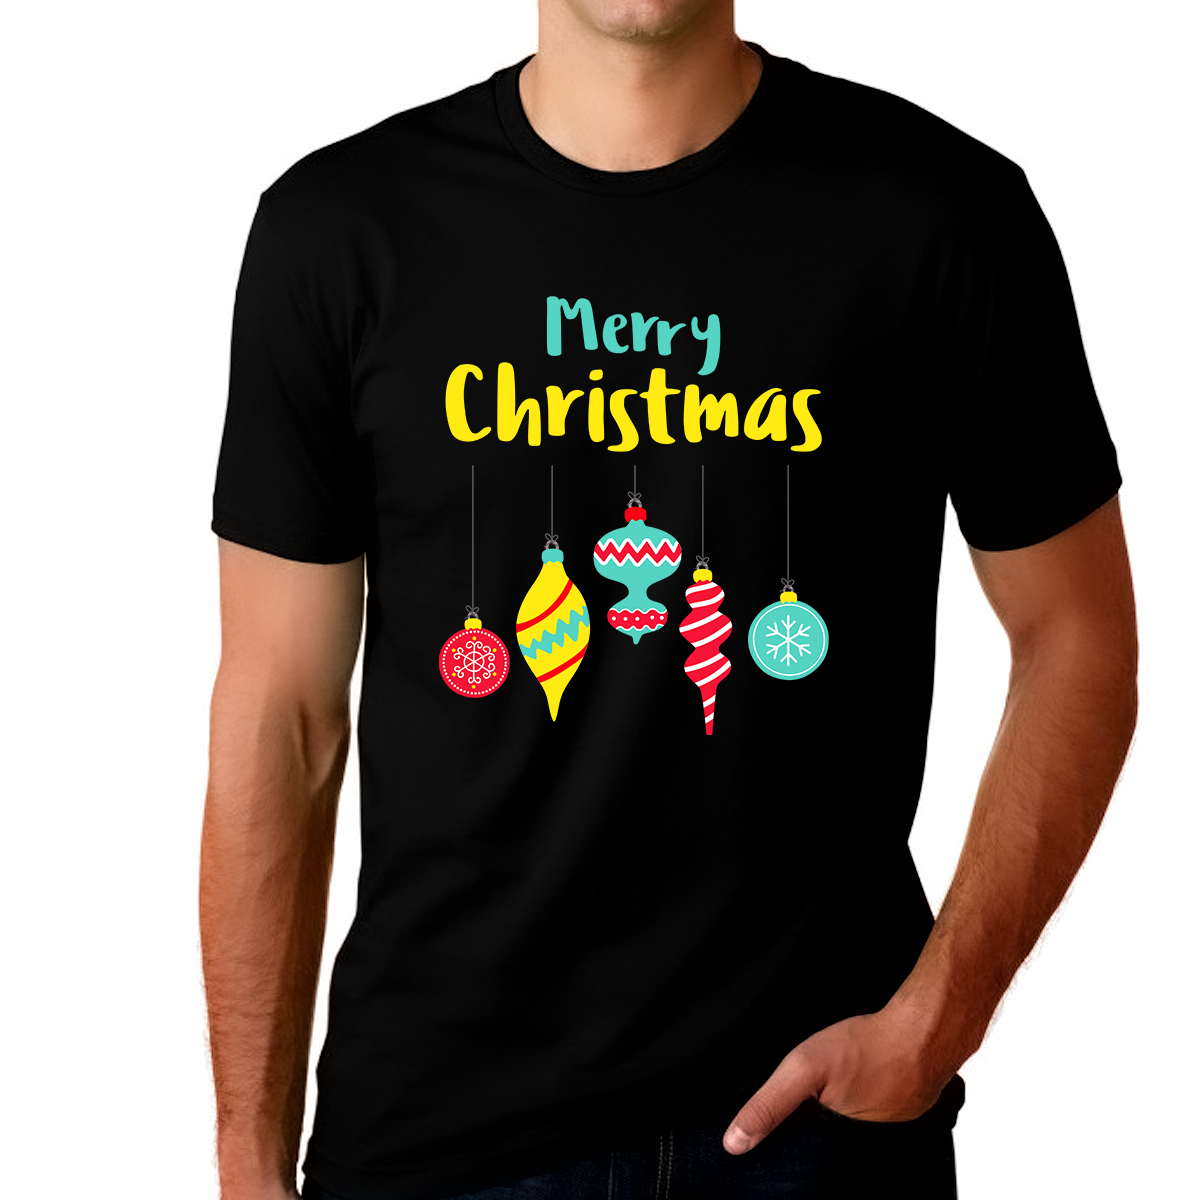 Funny Christmas Shirts for Men Mens Christmas Pajamas Funny Christmas TShirts for Men Funny Christmas Shirt